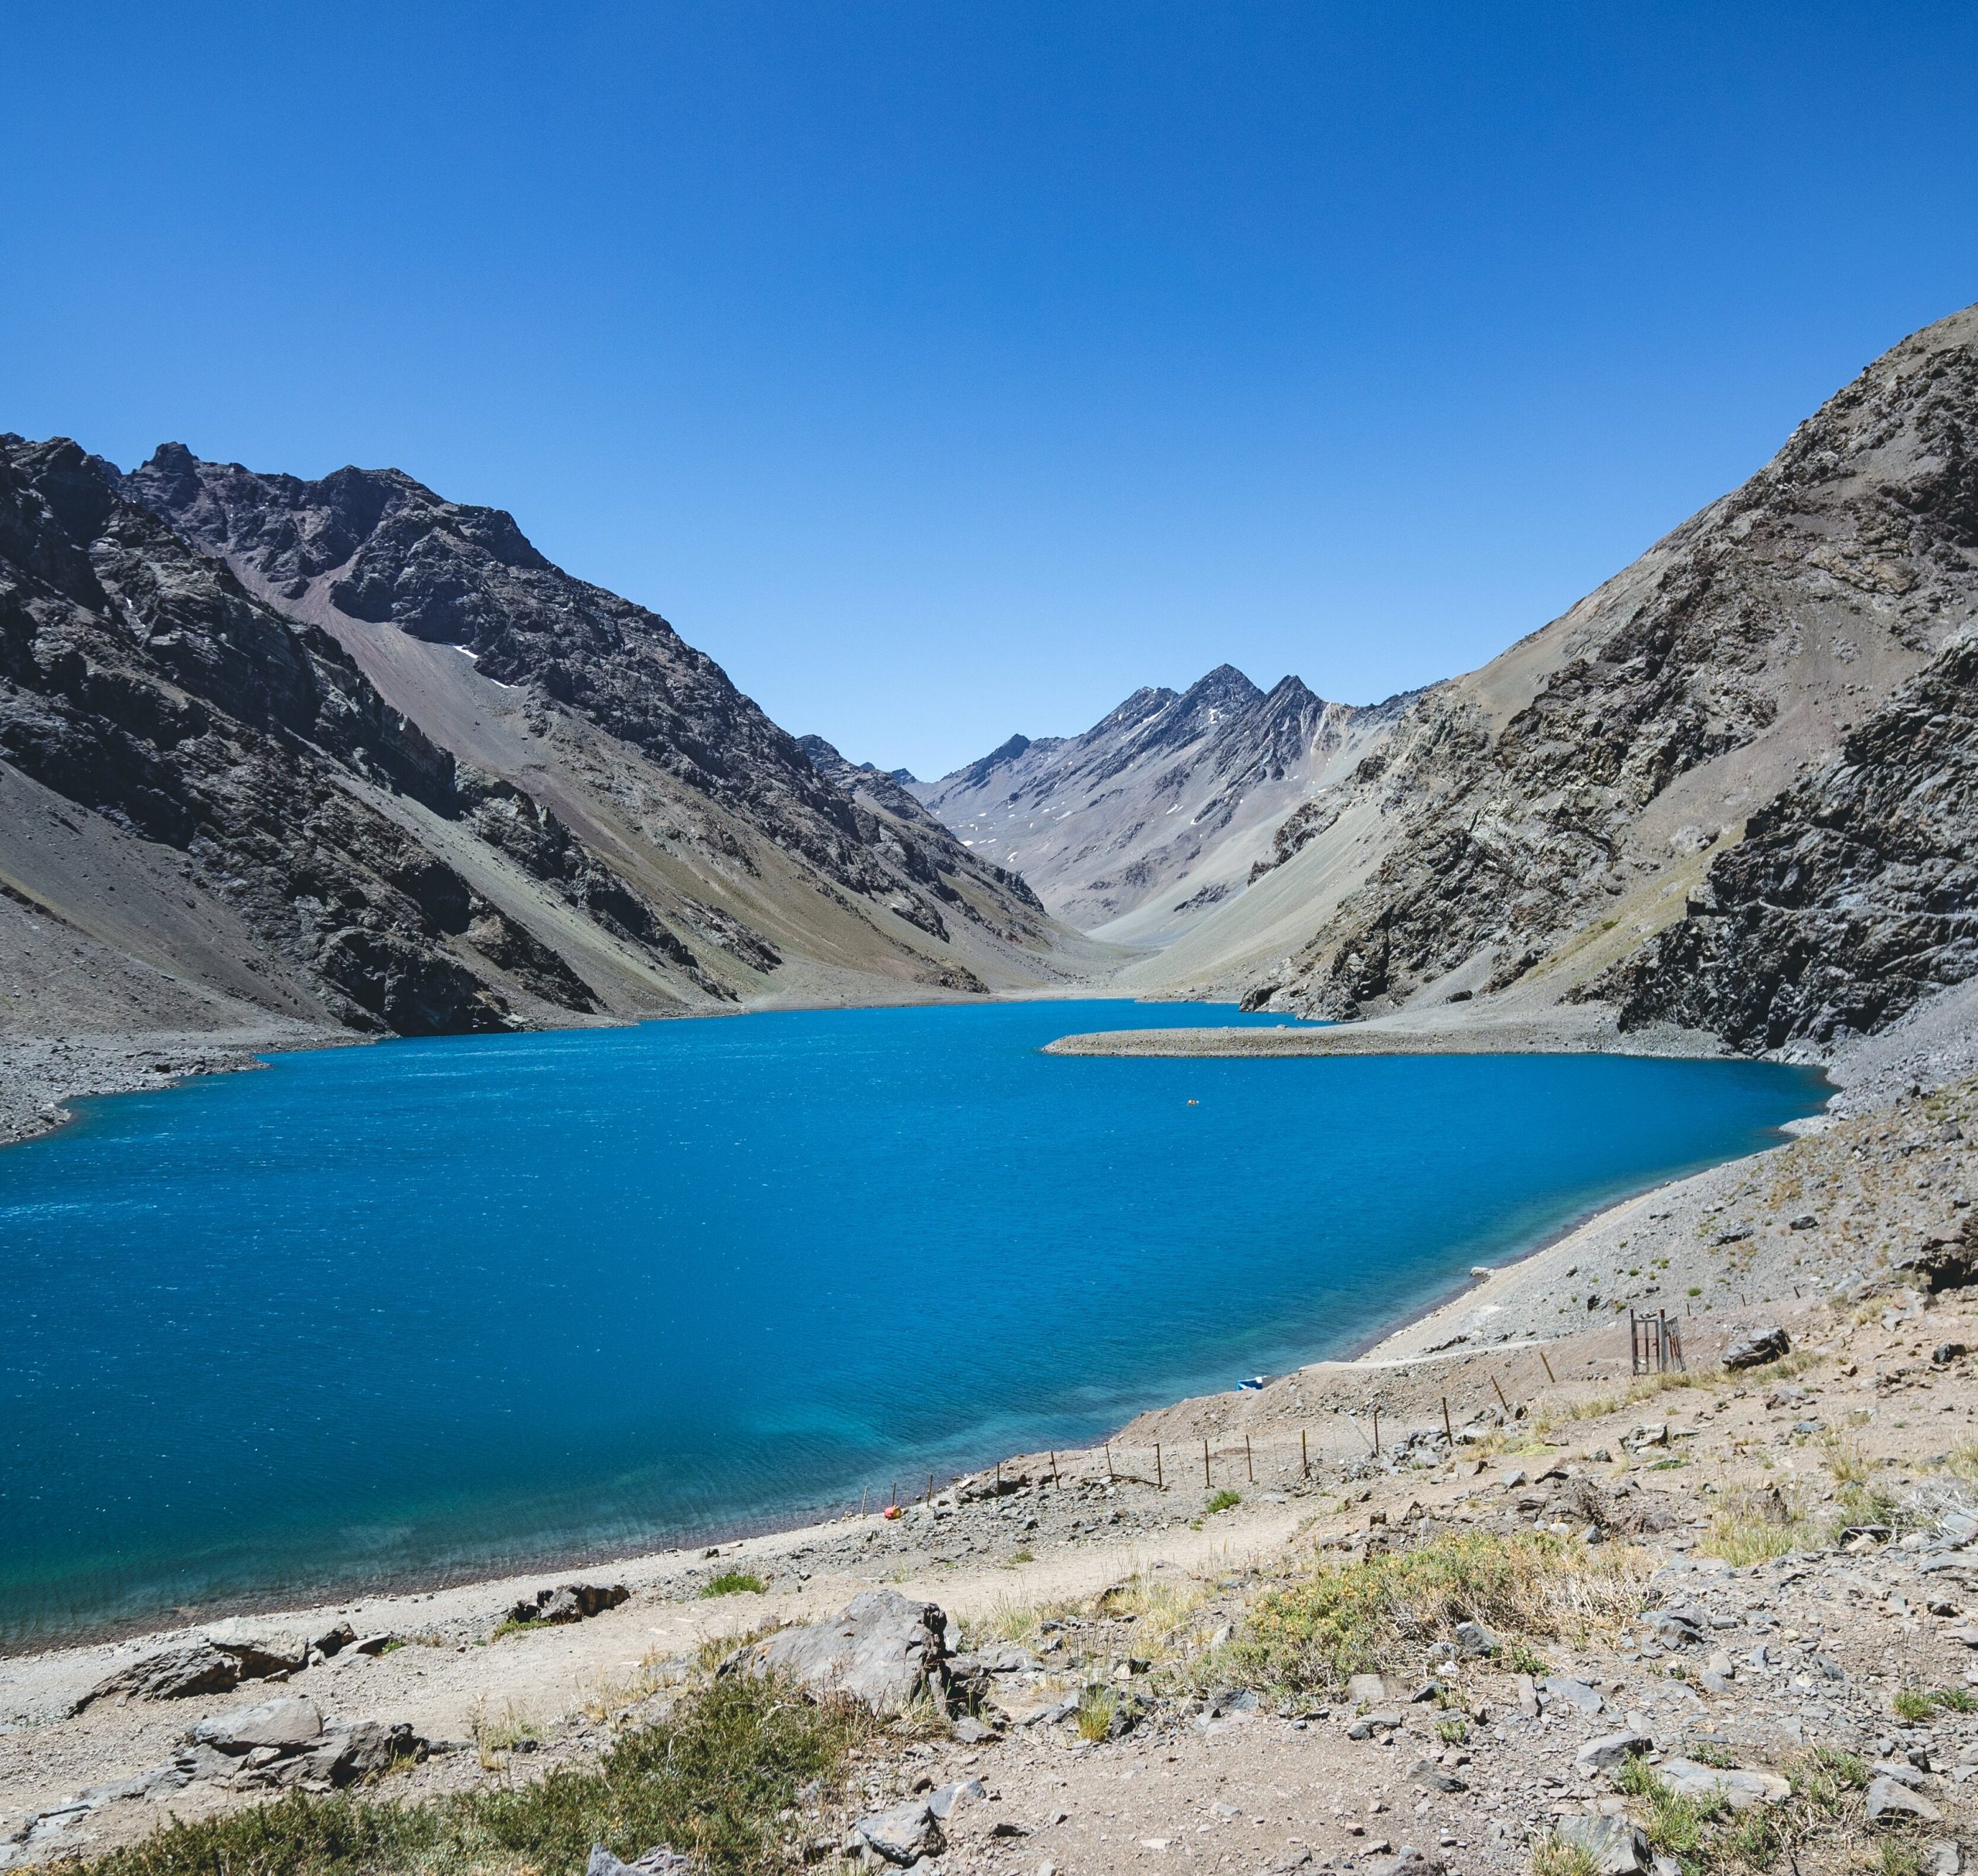 CULTURA:  Valle del Aconcagua lanzará libro sobre rutas patrimoniales de montaña